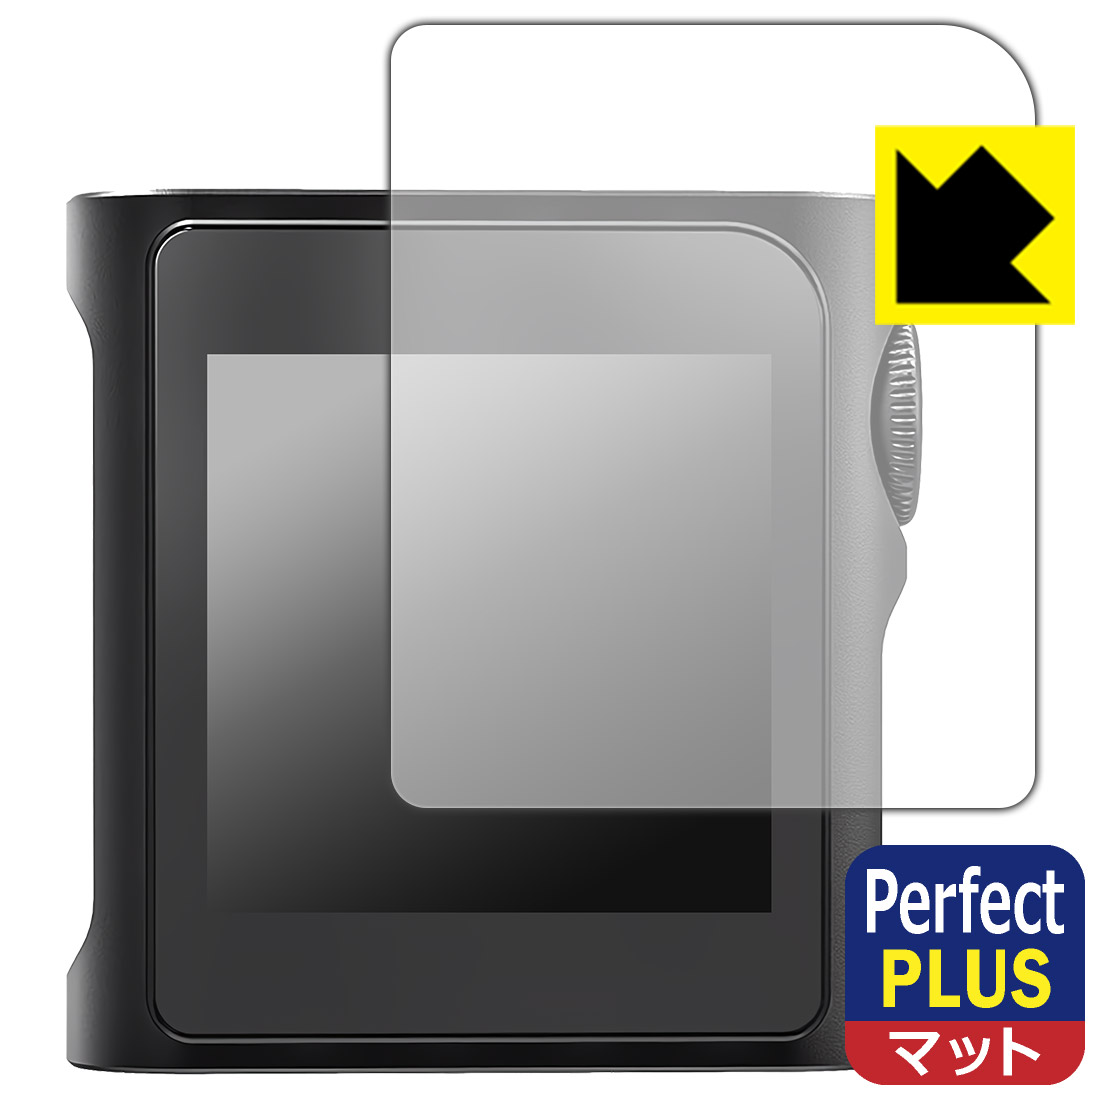 対応機種●対応機種 : SHANLING M0 Pro専用の商品です。●製品内容 : 表面用フィルム1枚・クリーニングワイプ1個●※保護フィルムが貼り付く「最大サイズ」で設計しています。●「Perfect Shield Plus」は画面の反射を強く抑え、指のすべりもなめらかな指紋や皮脂汚れがつきにくい『アンチグレアタイプ(非光沢)の保護フィルム』●安心の国産素材を使用。日本国内の自社工場で製造し出荷しています。 ★貼り付け失敗交換サービス対象商品★ 国内自社工場製造・発送だからできる 安心の製品保証とサポート ■製品保証 お届けした製品が誤っていたり、不具合があった場合などには、お届けから1ヶ月以内にメールにてお問い合わせください。交換等対応させていただきます。[キャンセル・返品（返金・交換）について] ■■貼り付け失敗時の交換サービス■■貼り付けに失敗しても1回だけ無償交換ができます。(失敗したフィルムをお送りいただき、新品に無償交換します。往復の送料のみお客様にご負担をお願いいたします。詳しくは製品に同封の紙をご確認ください) ■■保護フィルム貼り付け代行サービス■■保護フィルムの貼り付け作業に自信がない方には、PDA工房で貼り付け作業を代行いたします。(PDA工房の保護フィルムのみが対象です。詳しくは製品に同封の紙をご確認ください) Perfect Shield Plus【反射低減】保護フィルム 素材説明 ■画面の映り込みを強く抑える反射防止タイプ！表面に微細な凹凸を作ることにより、外光を乱反射させギラツキを抑える「アンチグレア加工」がされております。屋外での太陽光の映り込み、屋内でも蛍光灯などの映り込みが気になるシーンが多い方におすすめです。また、指紋がついた場合でも目立ちにくいという特長があります。【Perfect Shield Plus】は、従来の製品【Perfect Shield】よりも反射低減(アンチグレア)効果が強いフィルムです。映り込み防止を一番に優先する方におすすめです。(反射低減効果が強いため、表示画面との相性により色のにじみ・モアレ等が発生する場合があります)■防指紋のハードコート！さらさらな指ざわり！指滑りはさらさらな使用感でストレスのない操作・入力が可能です。ハードコート加工がされており、キズや擦れに強くなっています。簡単にキズがつかず長くご利用いただけます。反射防止のアンチグレア加工で指紋が目立ちにくい上、表面は防汚コーティングがされており、皮脂や汚れがつきにくく、また、落ちやすくなっています。(【Perfect Shield】よりも指紋は目立ちません)■気泡の入りにくい特殊な自己吸着タイプ接着面は気泡の入りにくい特殊な自己吸着タイプです。素材に柔軟性があり、貼り付け作業も簡単にできます。また、はがすときにガラス製フィルムのように割れてしまうことはありません。貼り直しが何度でもできるので、正しい位置へ貼り付けられるまでやり直すことができます。■安心の日本製最高級グレードの国産素材を日本国内の弊社工場で加工している完全な Made in Japan です。安心の品質をお届けします。 【ポスト投函送料無料】商品は【ポスト投函発送 (追跡可能メール便)】で発送します。お急ぎ、配達日時を指定されたい方は以下のクーポンを同時購入ください。【お急ぎ便クーポン】　プラス110円(税込)で速達扱いでの発送。お届けはポストへの投函となります。【配達日時指定クーポン】　プラス550円(税込)で配達日時を指定し、宅配便で発送させていただきます。【お急ぎ便クーポン】はこちらをクリック【配達日時指定クーポン】はこちらをクリック